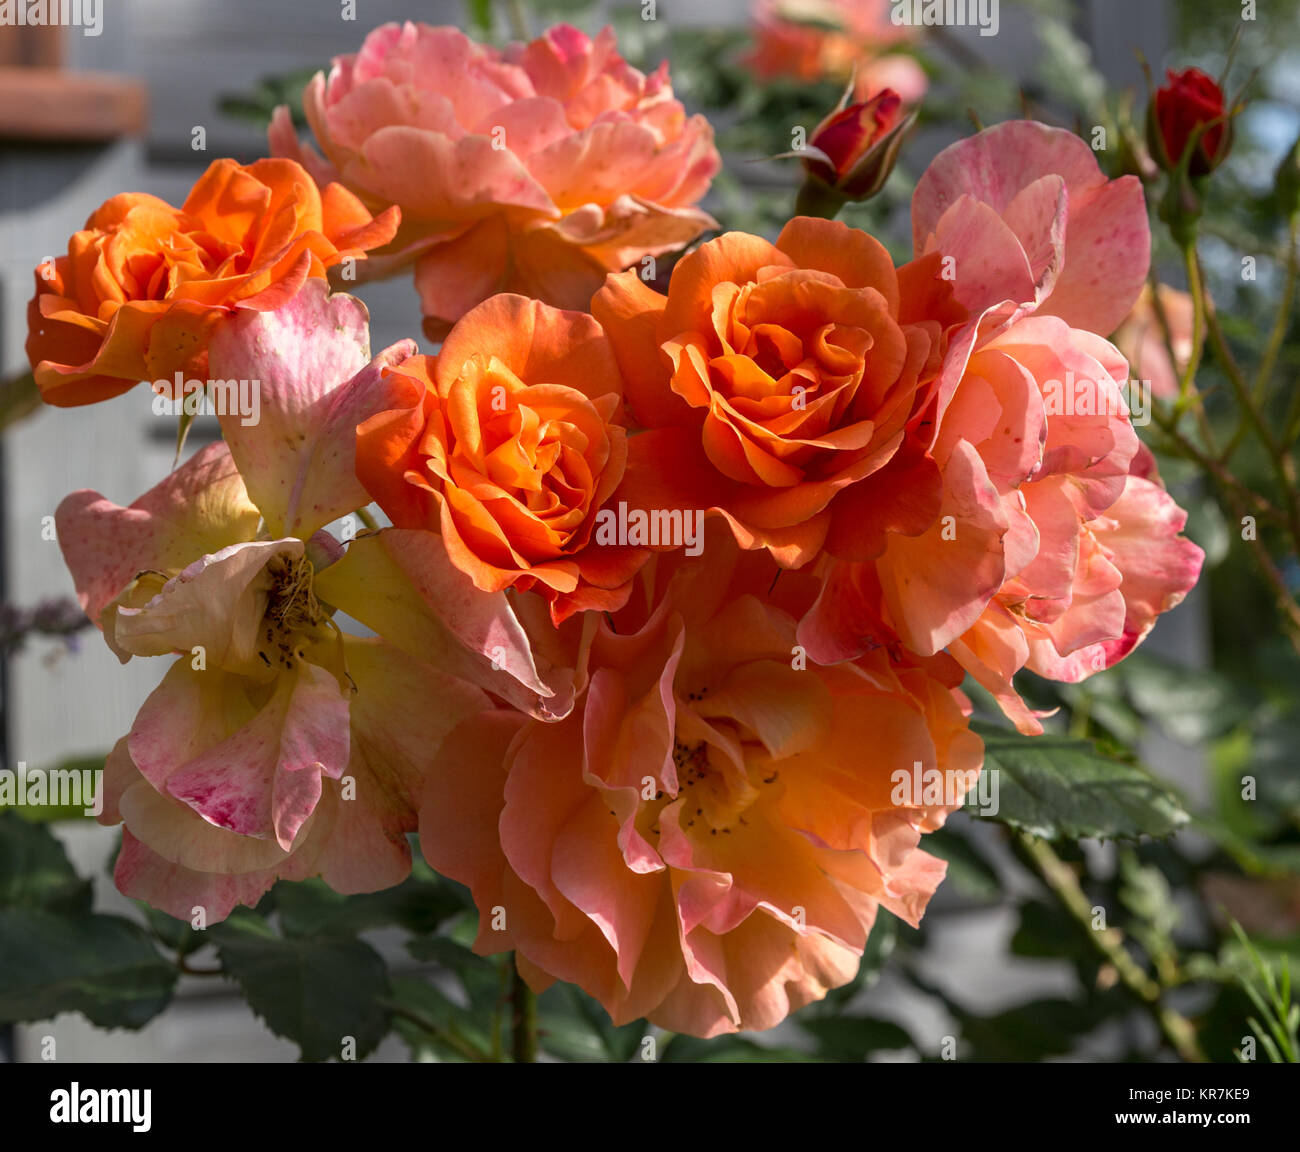 Schöne orange und rot nostalgische Rose in einem Garten. Strauch rose  Westerland. Kordes Rosen Stockfotografie - Alamy